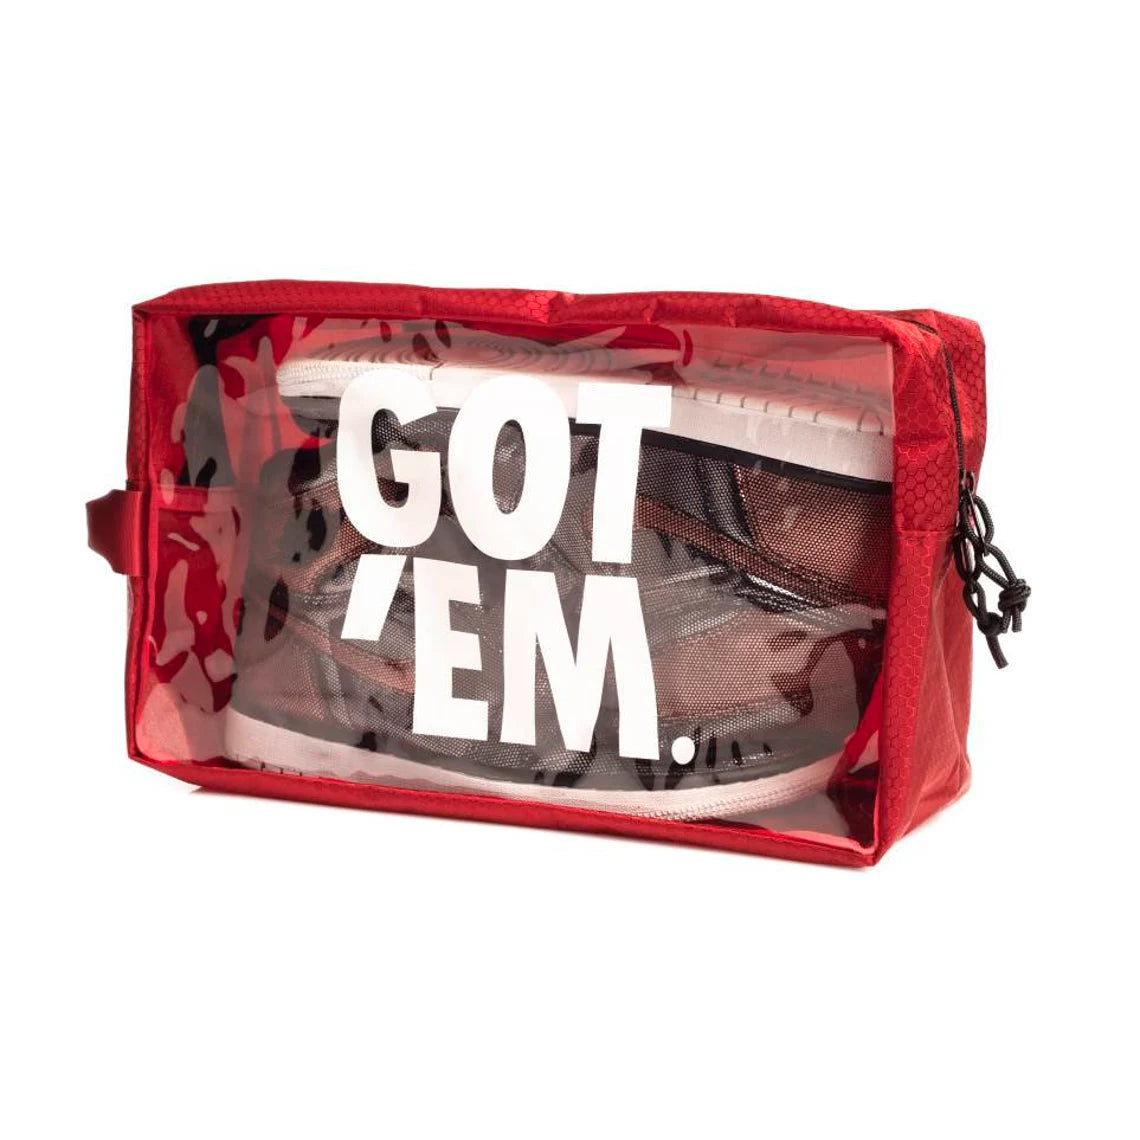 Got 'Em Portable Travel & Storage XL Sneaker Bags by EZB